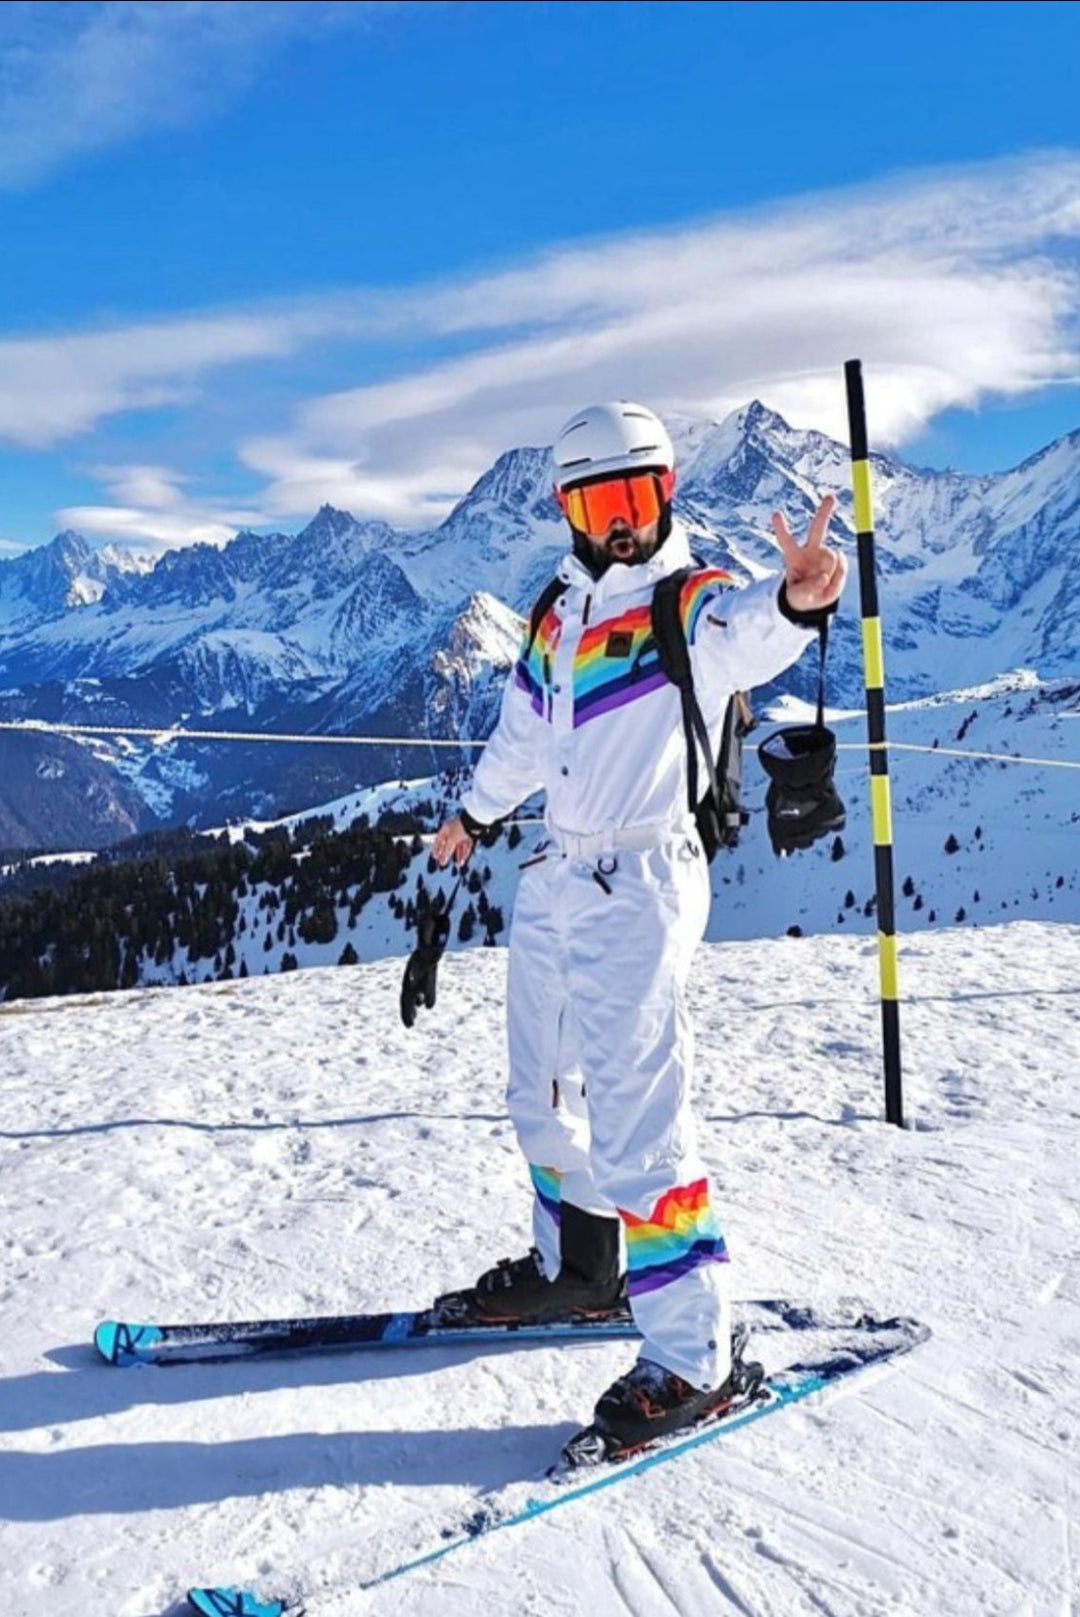 Combinaisons de ski pour hommes – OOSC Clothing - EU